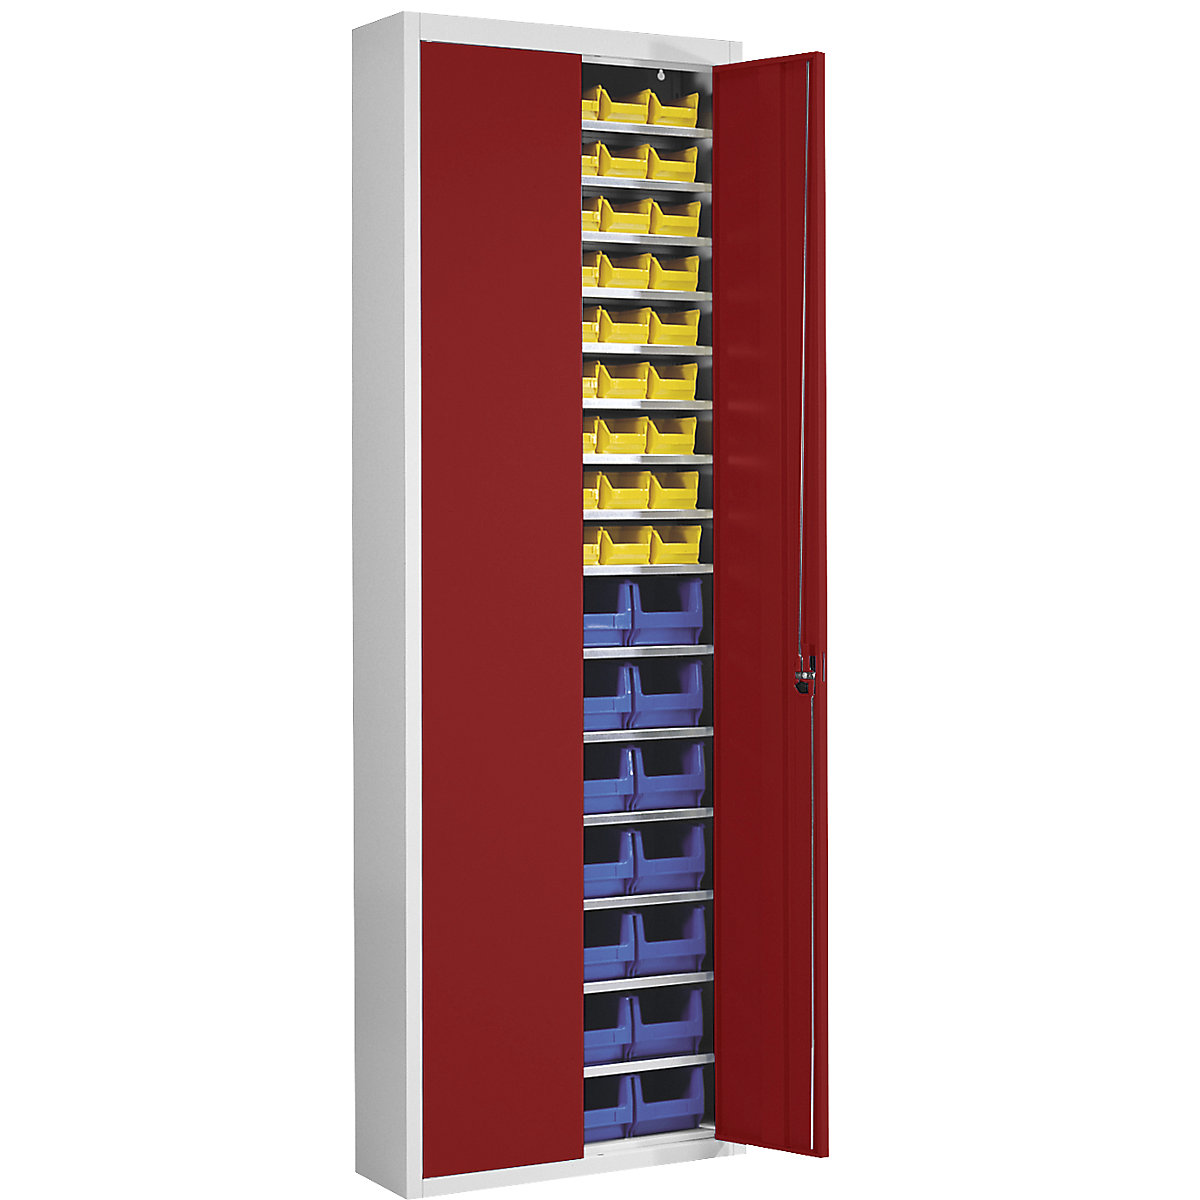 Skladová skříň s přepravkami s viditelným obsahem – mauser, v x š x h 2150 x 680 x 280 mm, dvoubarevné, korpus šedý, dveře červené, 82 přepravek-9